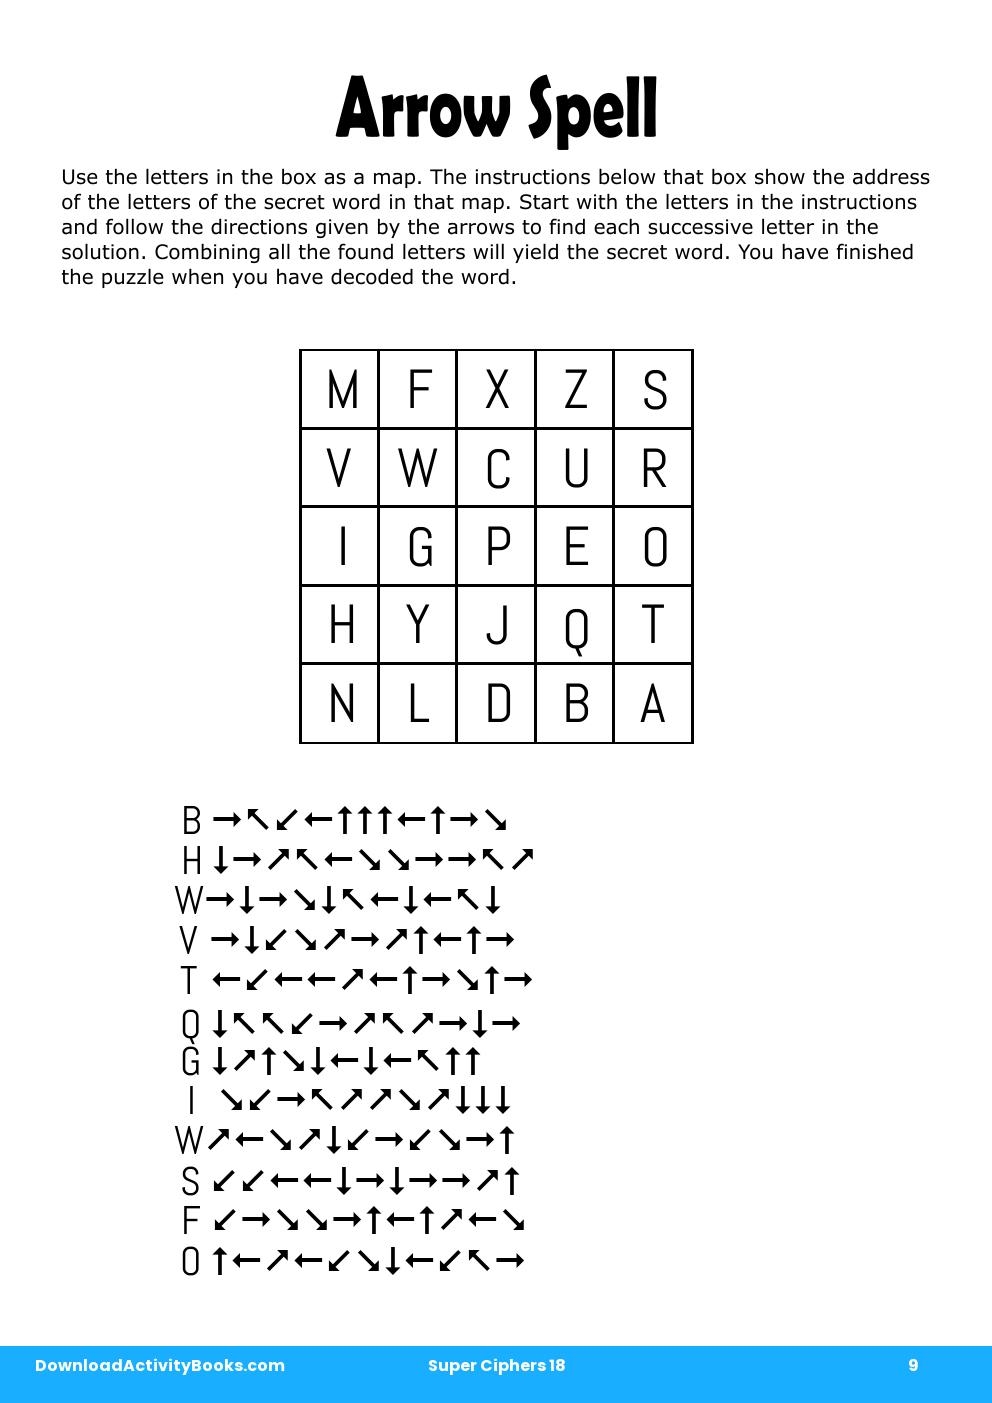 Arrow Spell in Super Ciphers 18